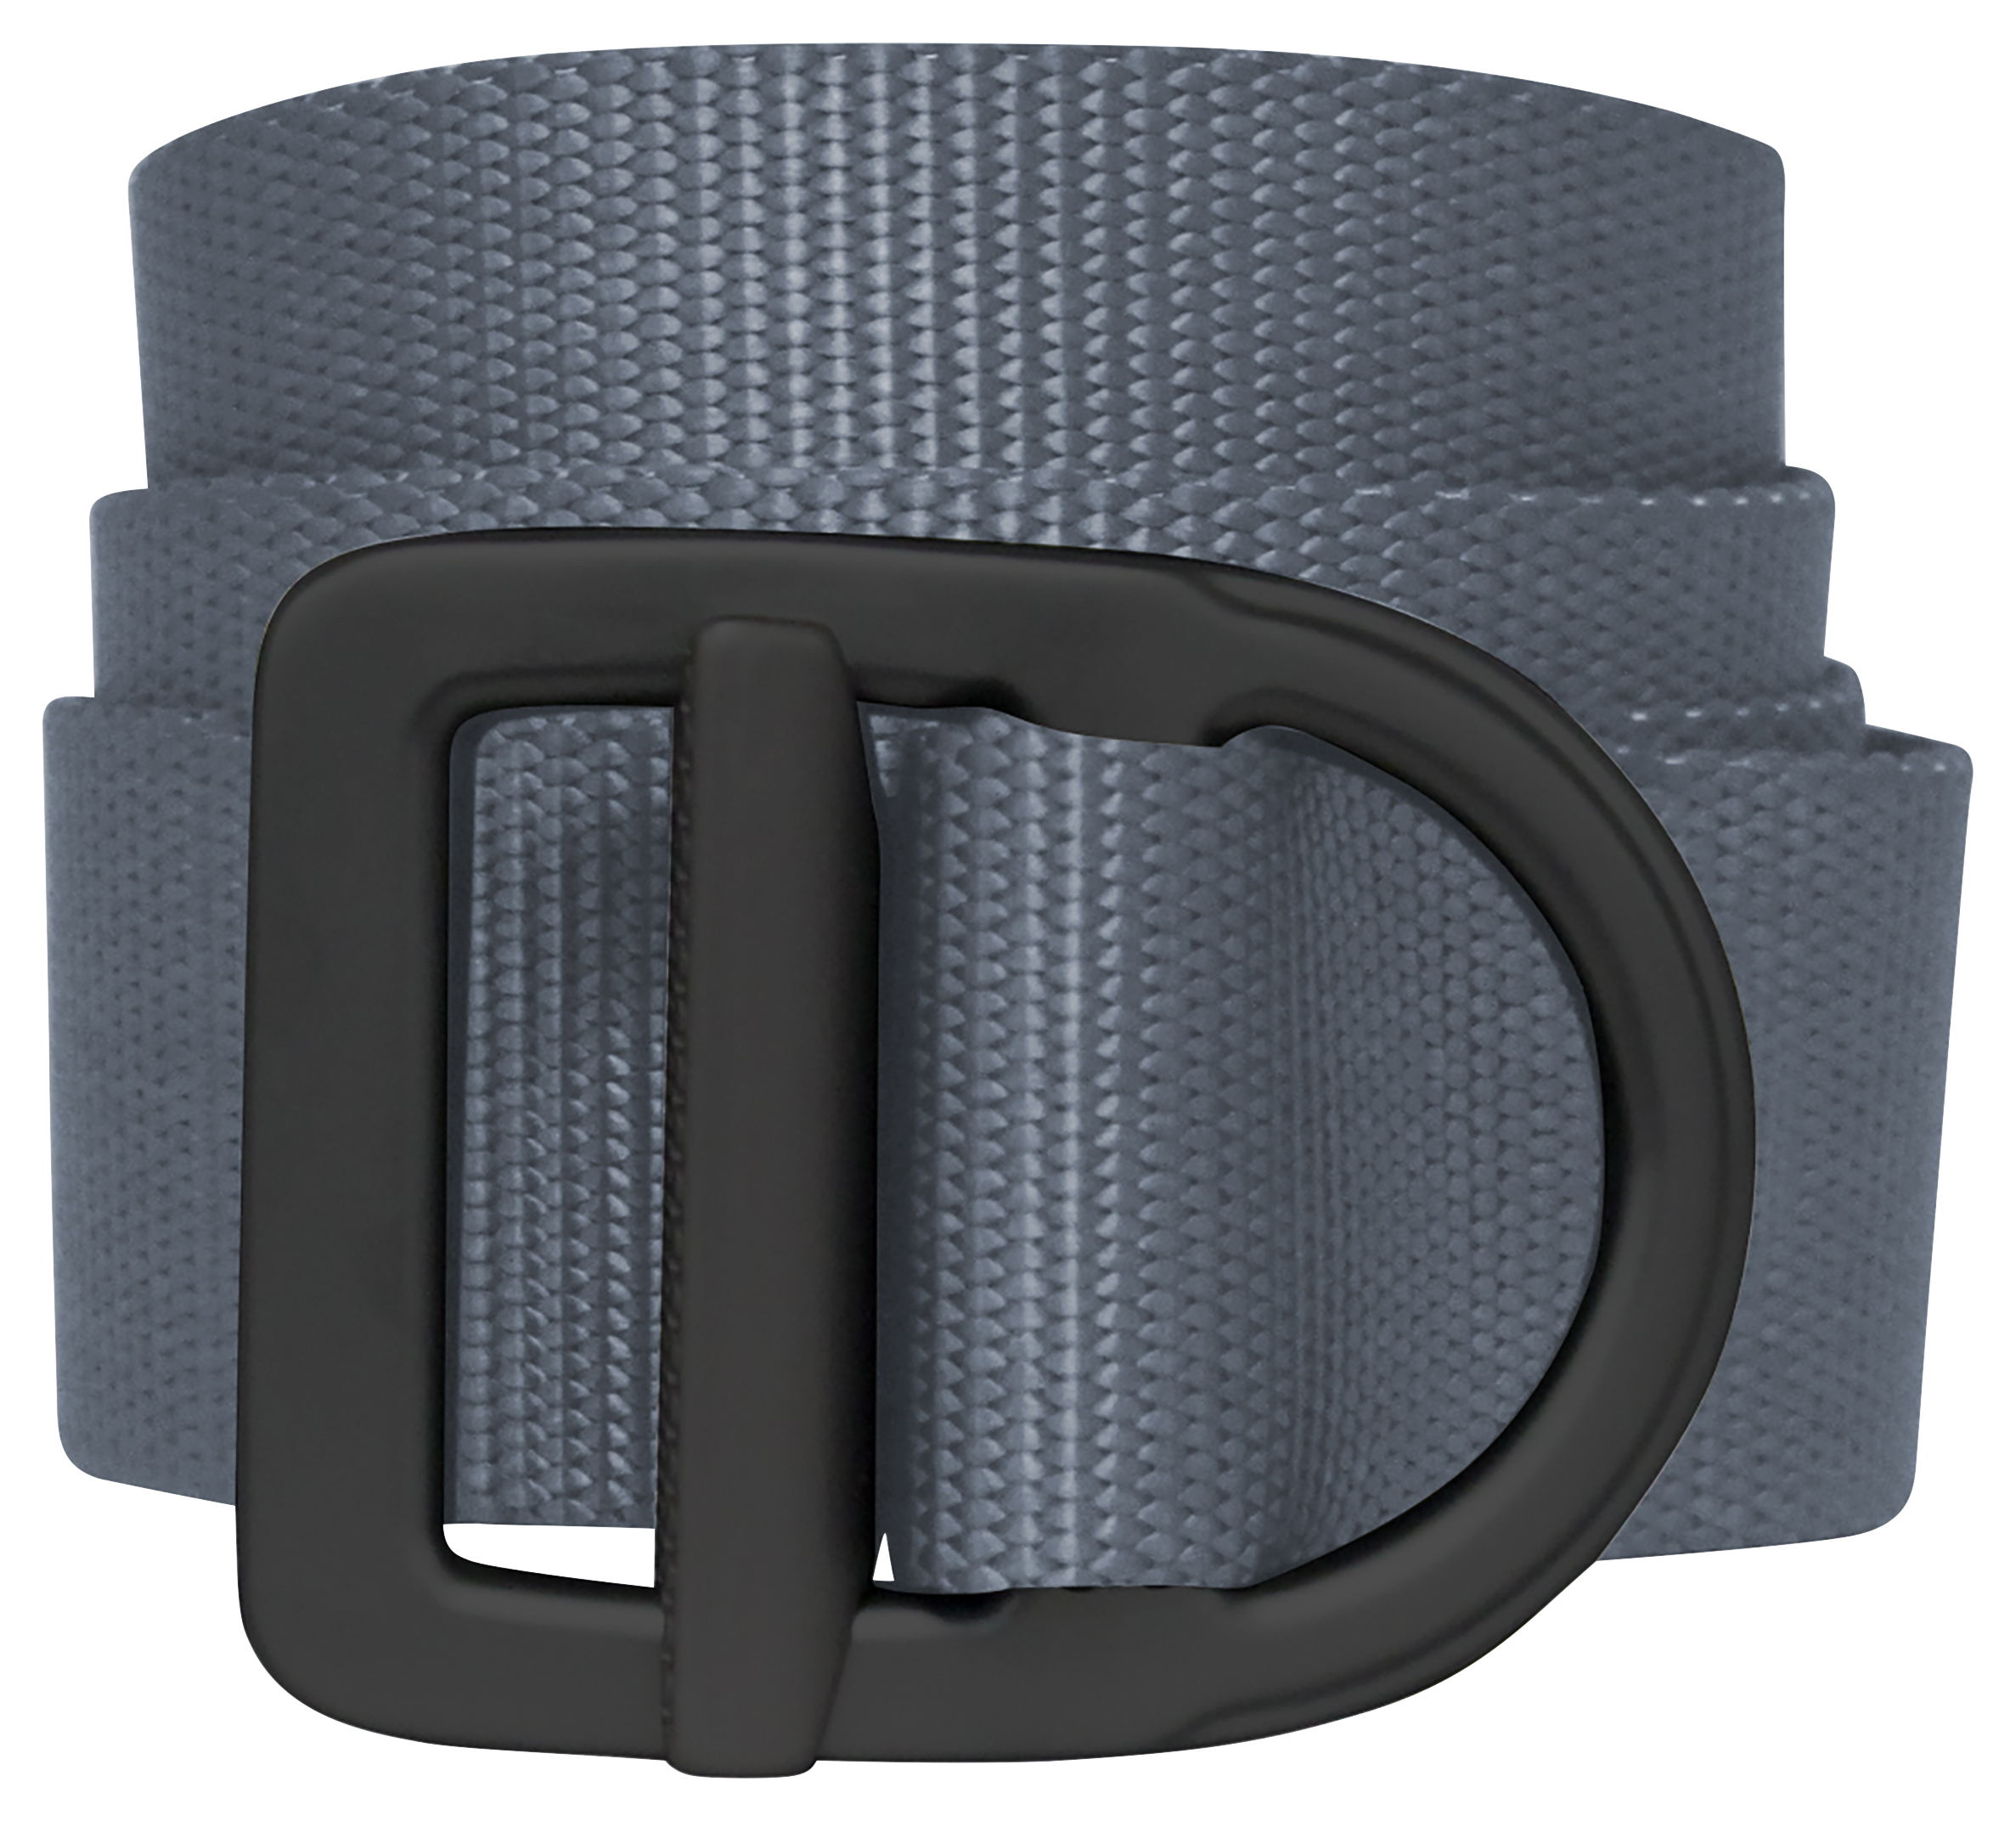 Bison Designs Last Chance Delta Light-Duty Belt for Men - Grey/Black - L